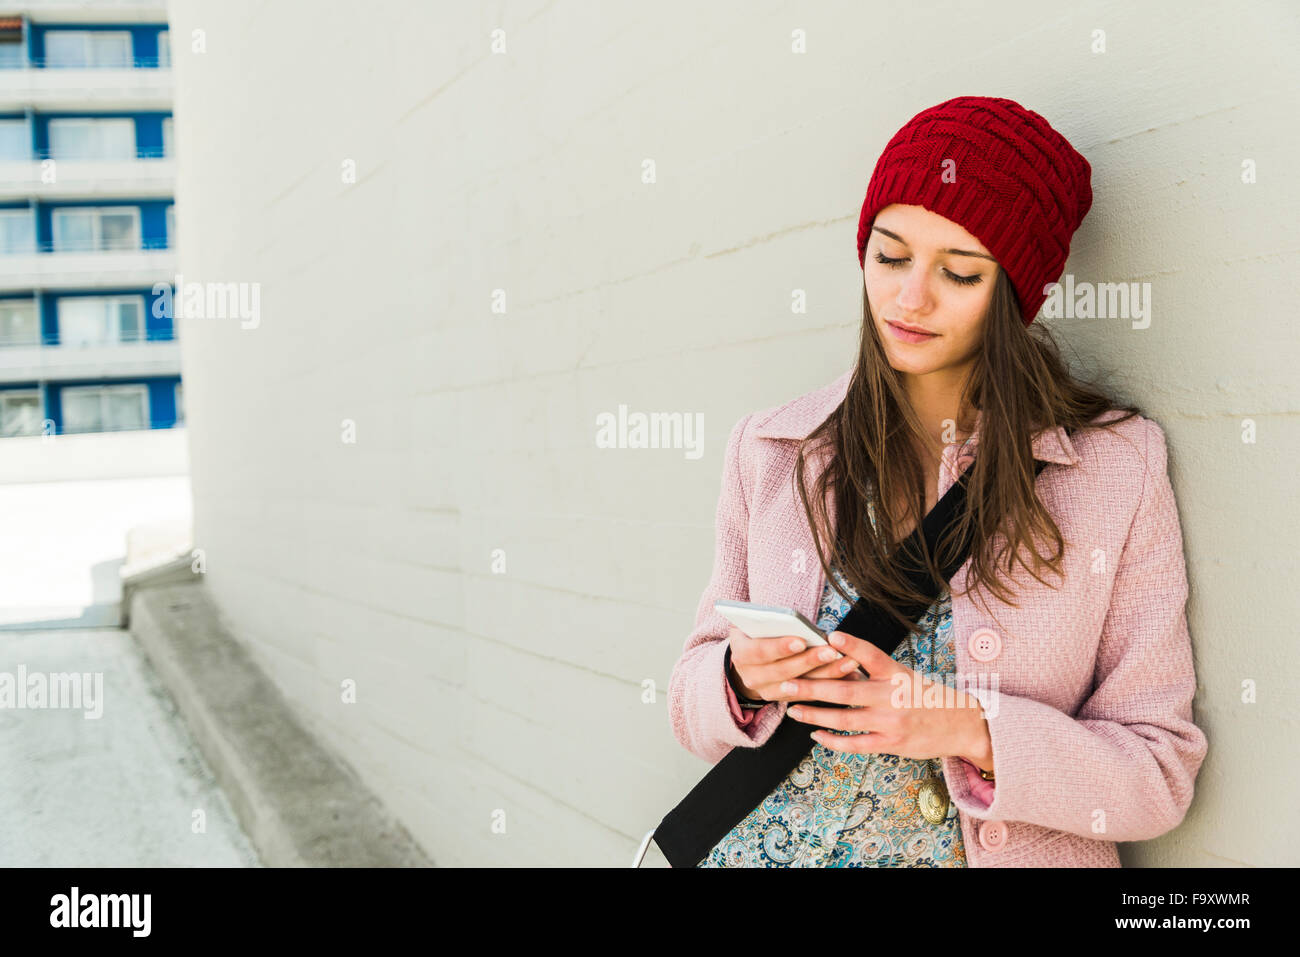 Jeune femme appuyée contre un mur de béton looking at cell phone Banque D'Images